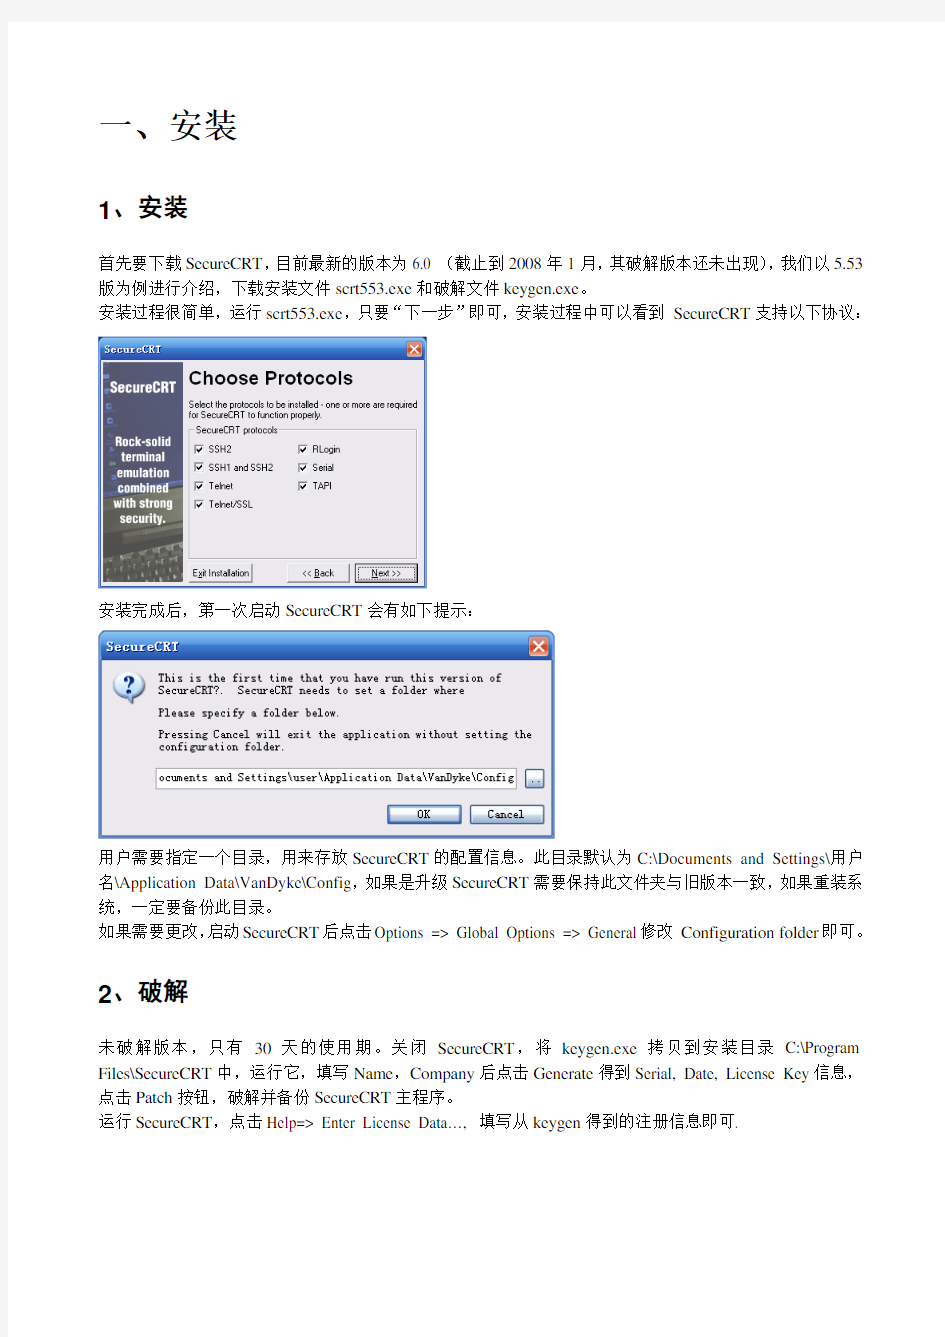 SecureCRT_中文使用指南